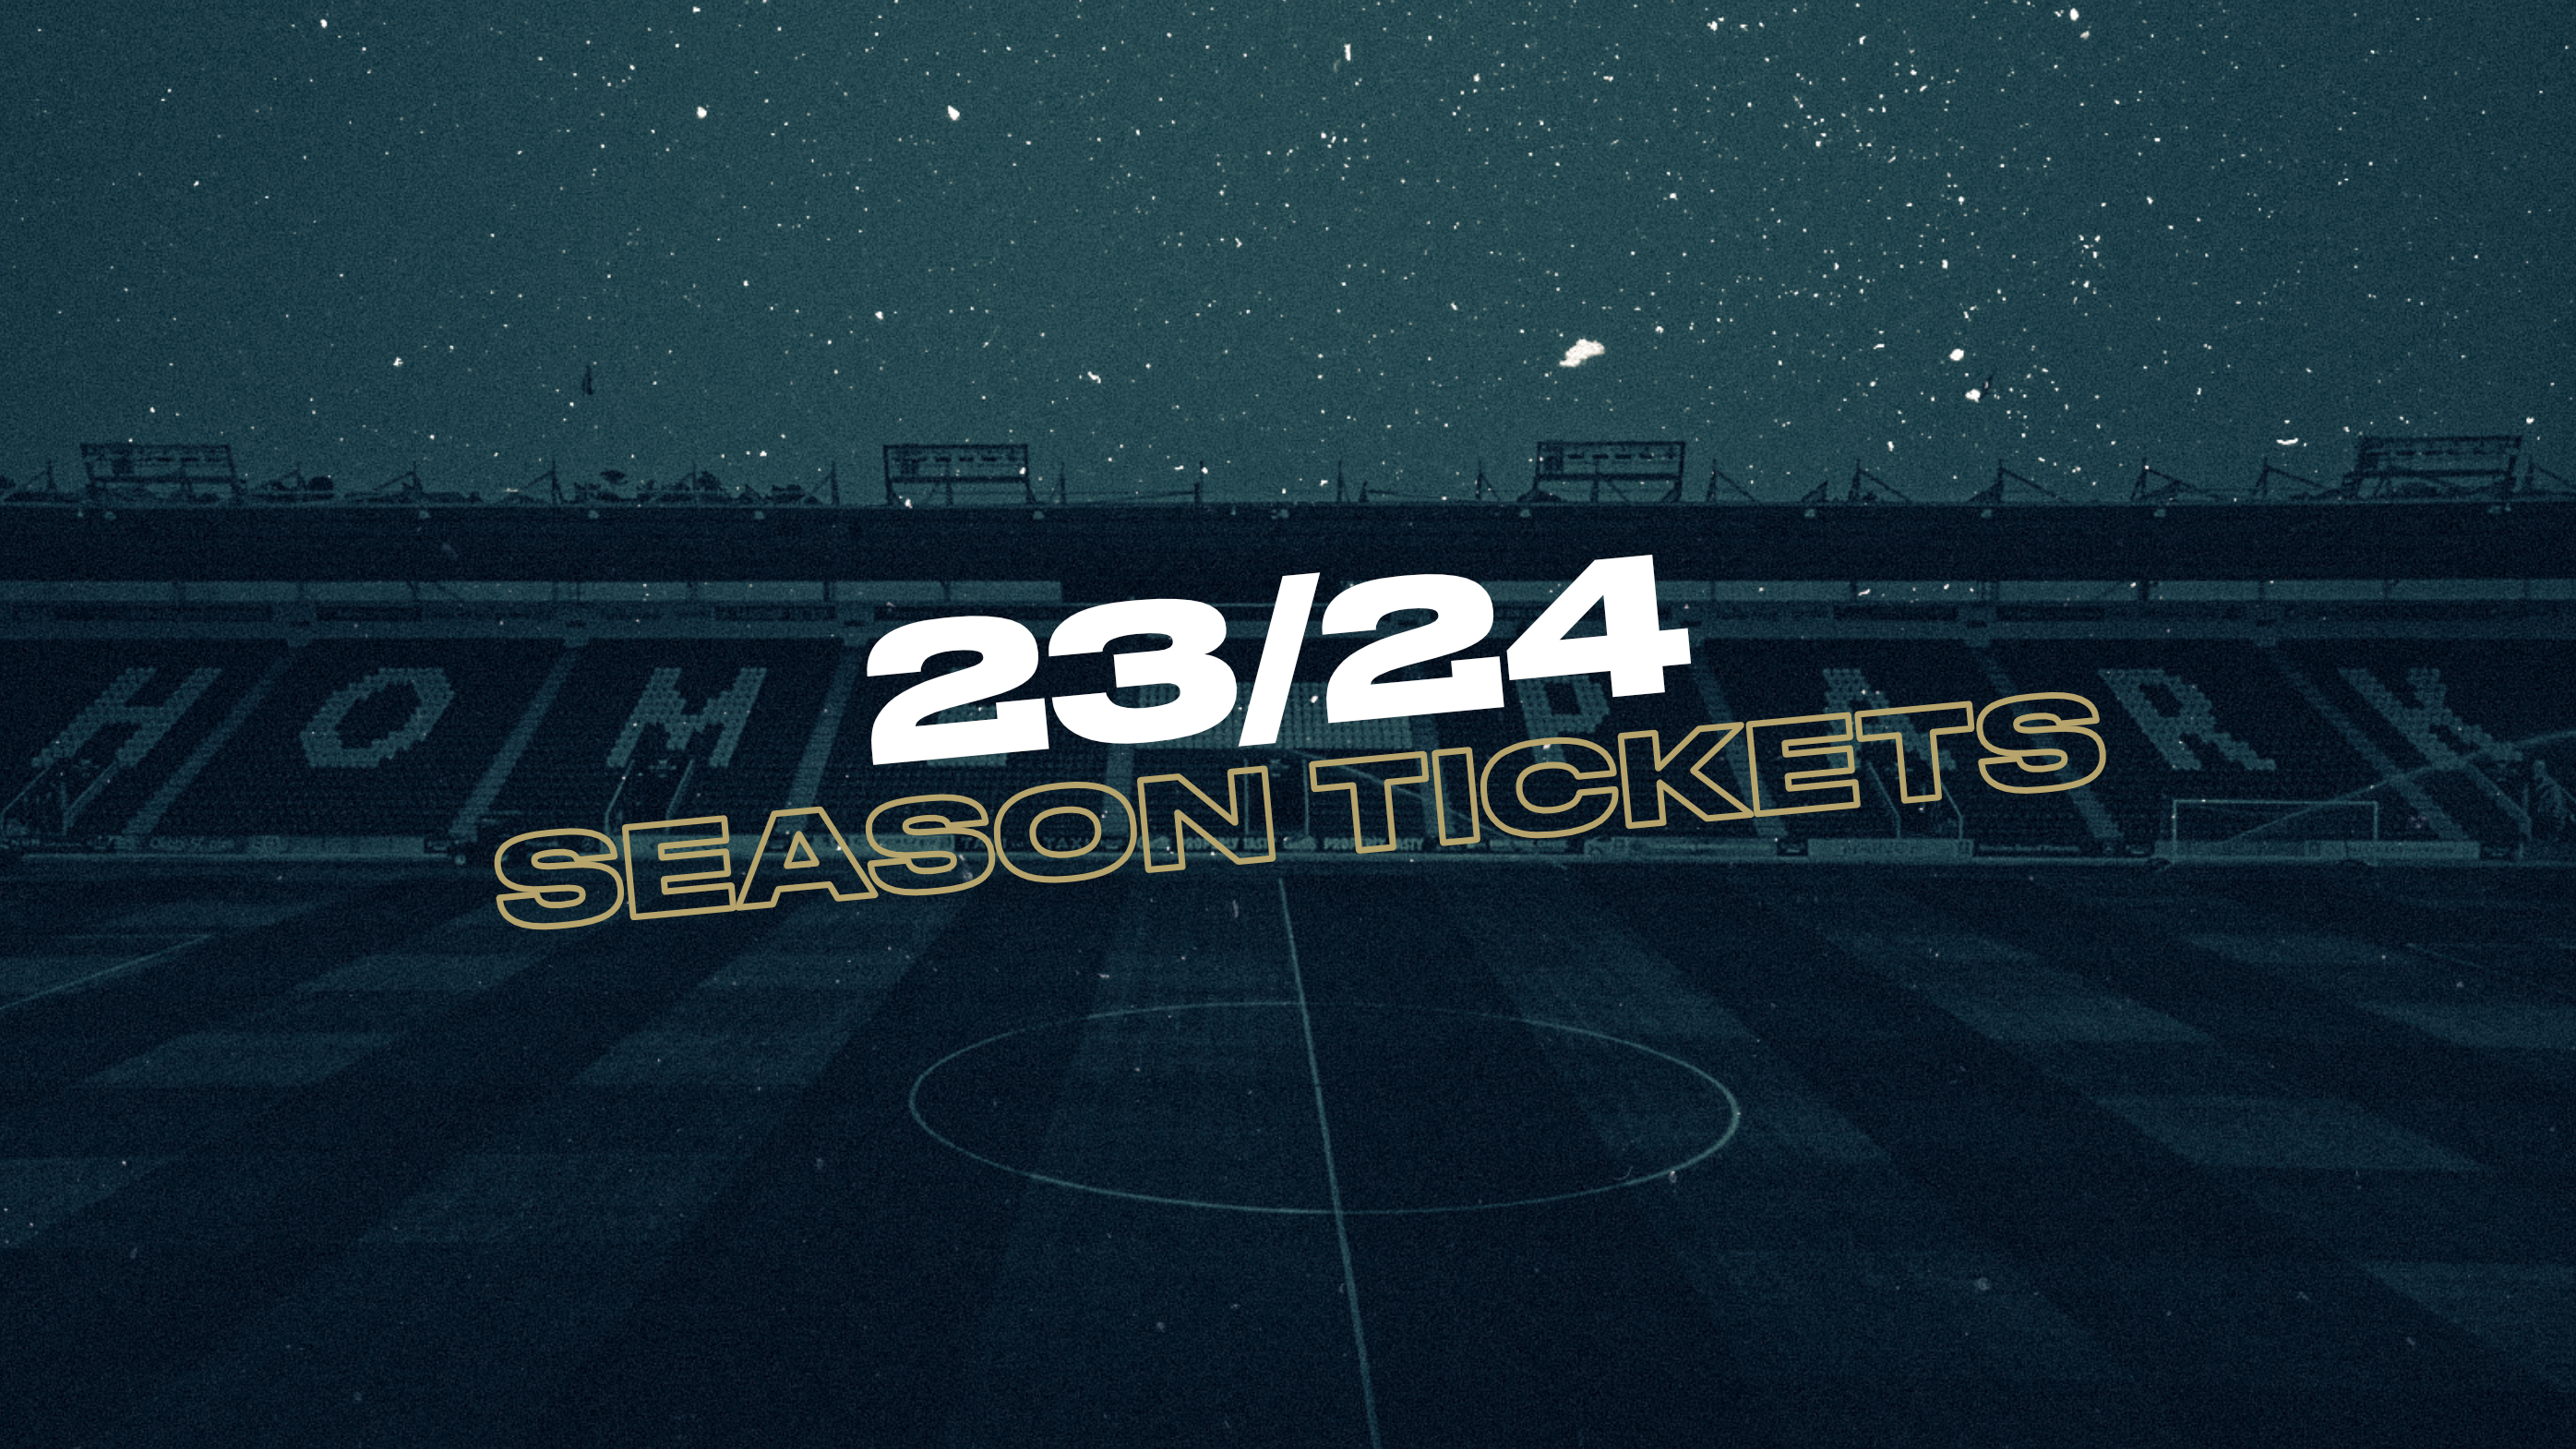 season tickets 2324